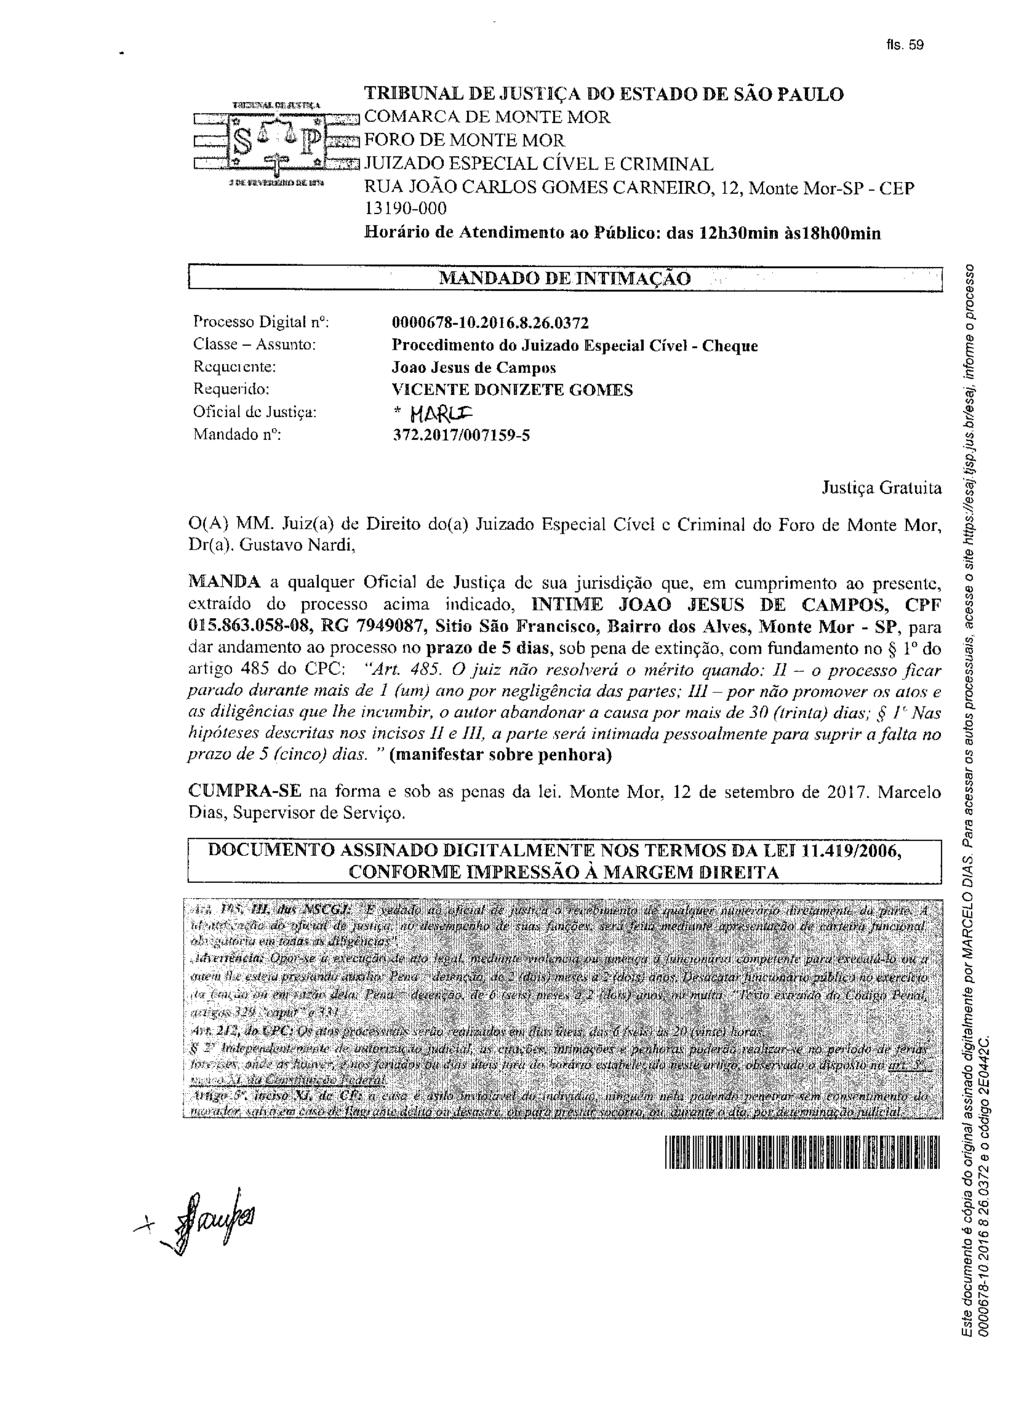 fls. 60 Este documento é cópia do original, assinado digitalmente por MARCELO DIAS, liberado nos autos em 27/09/2017 às 16:46.